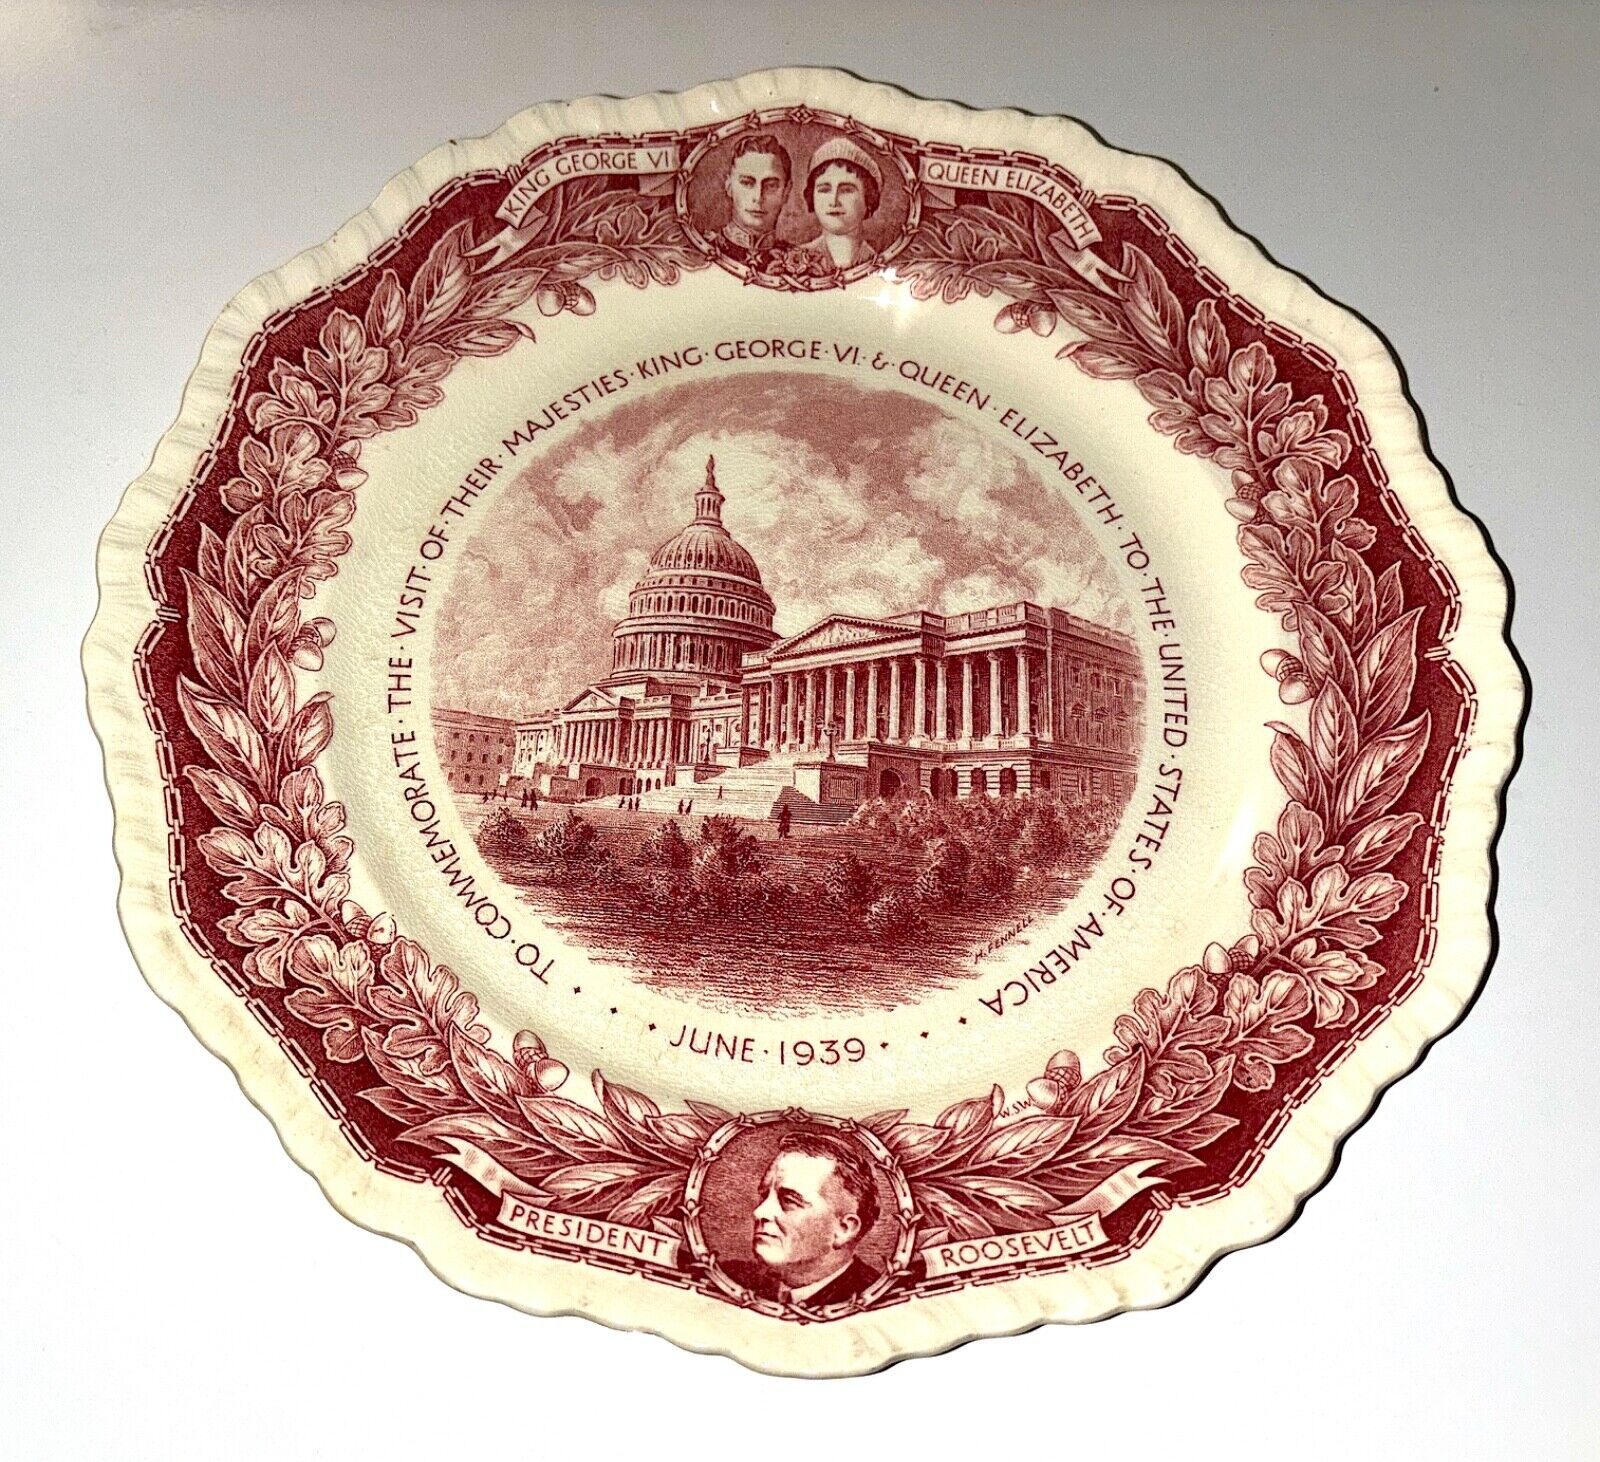 1939 Mason\'s King George VI & Queen Elizabeth Commemorative Plate 1939